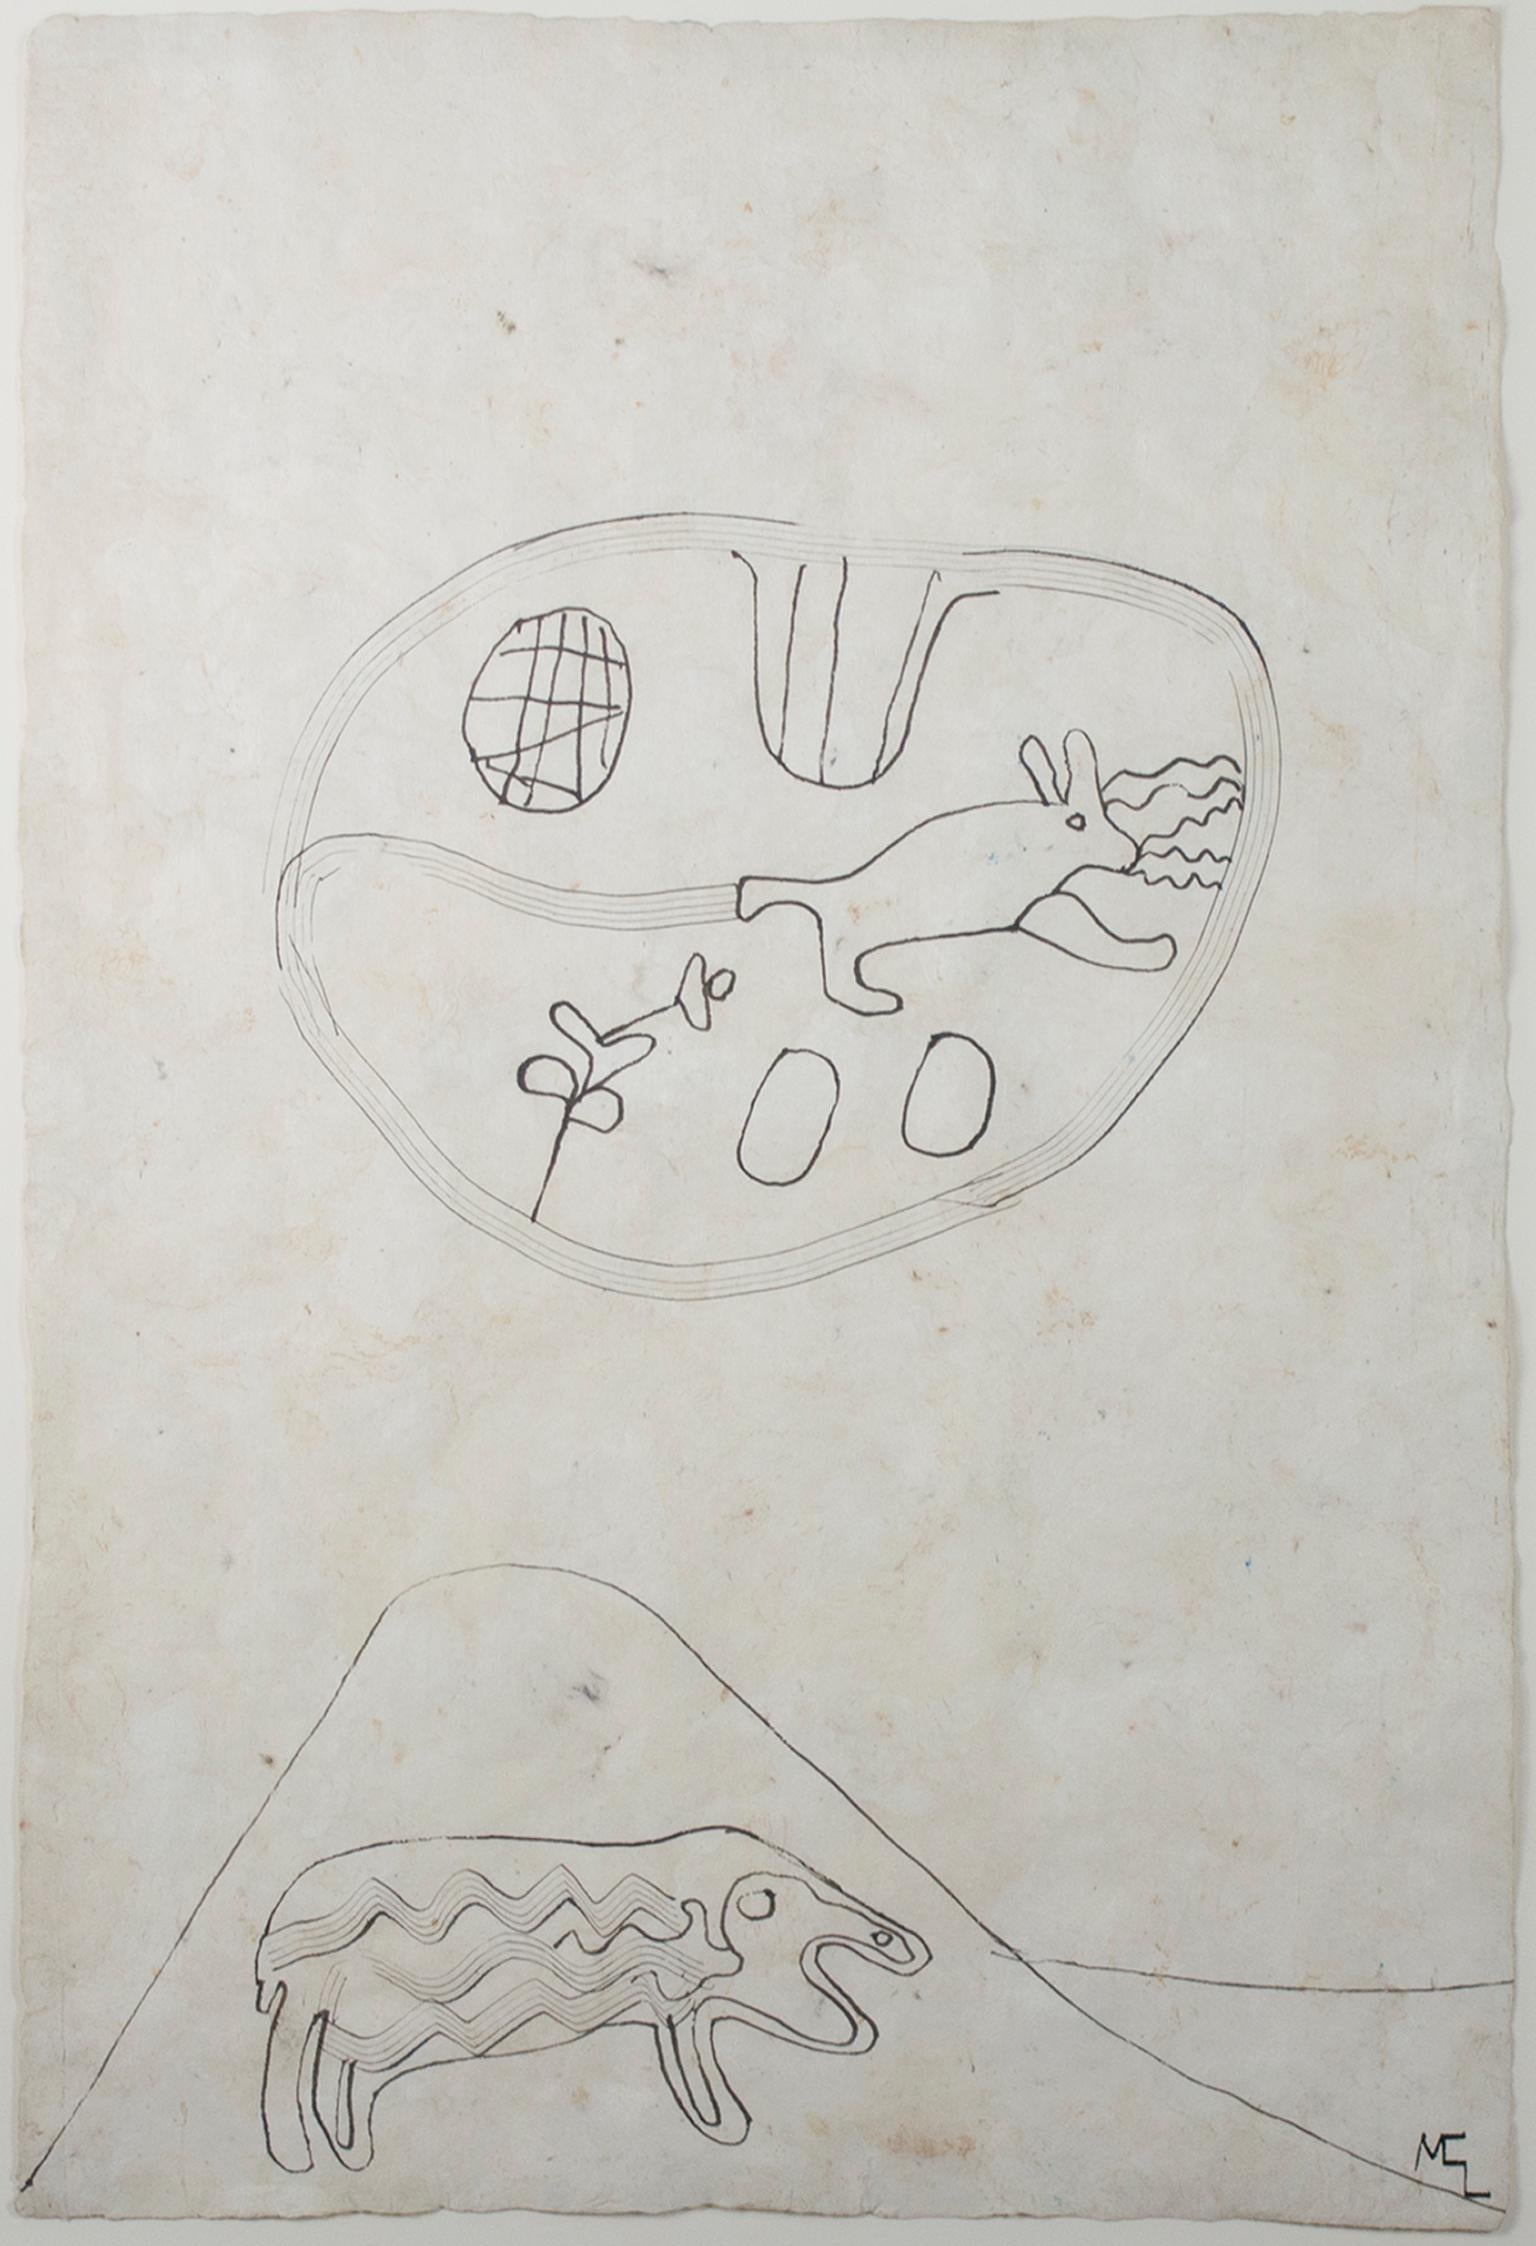 "Sheep, Rabbit in Desert" est un dessin original à l'encre sur papier amate fait main de Miguel Castro Leñero. L'artiste a apposé ses initiales en bas à droite. Cette pièce présente deux animaux abstraits. 

23 1/2" x 15 3/4" 

Des compositions